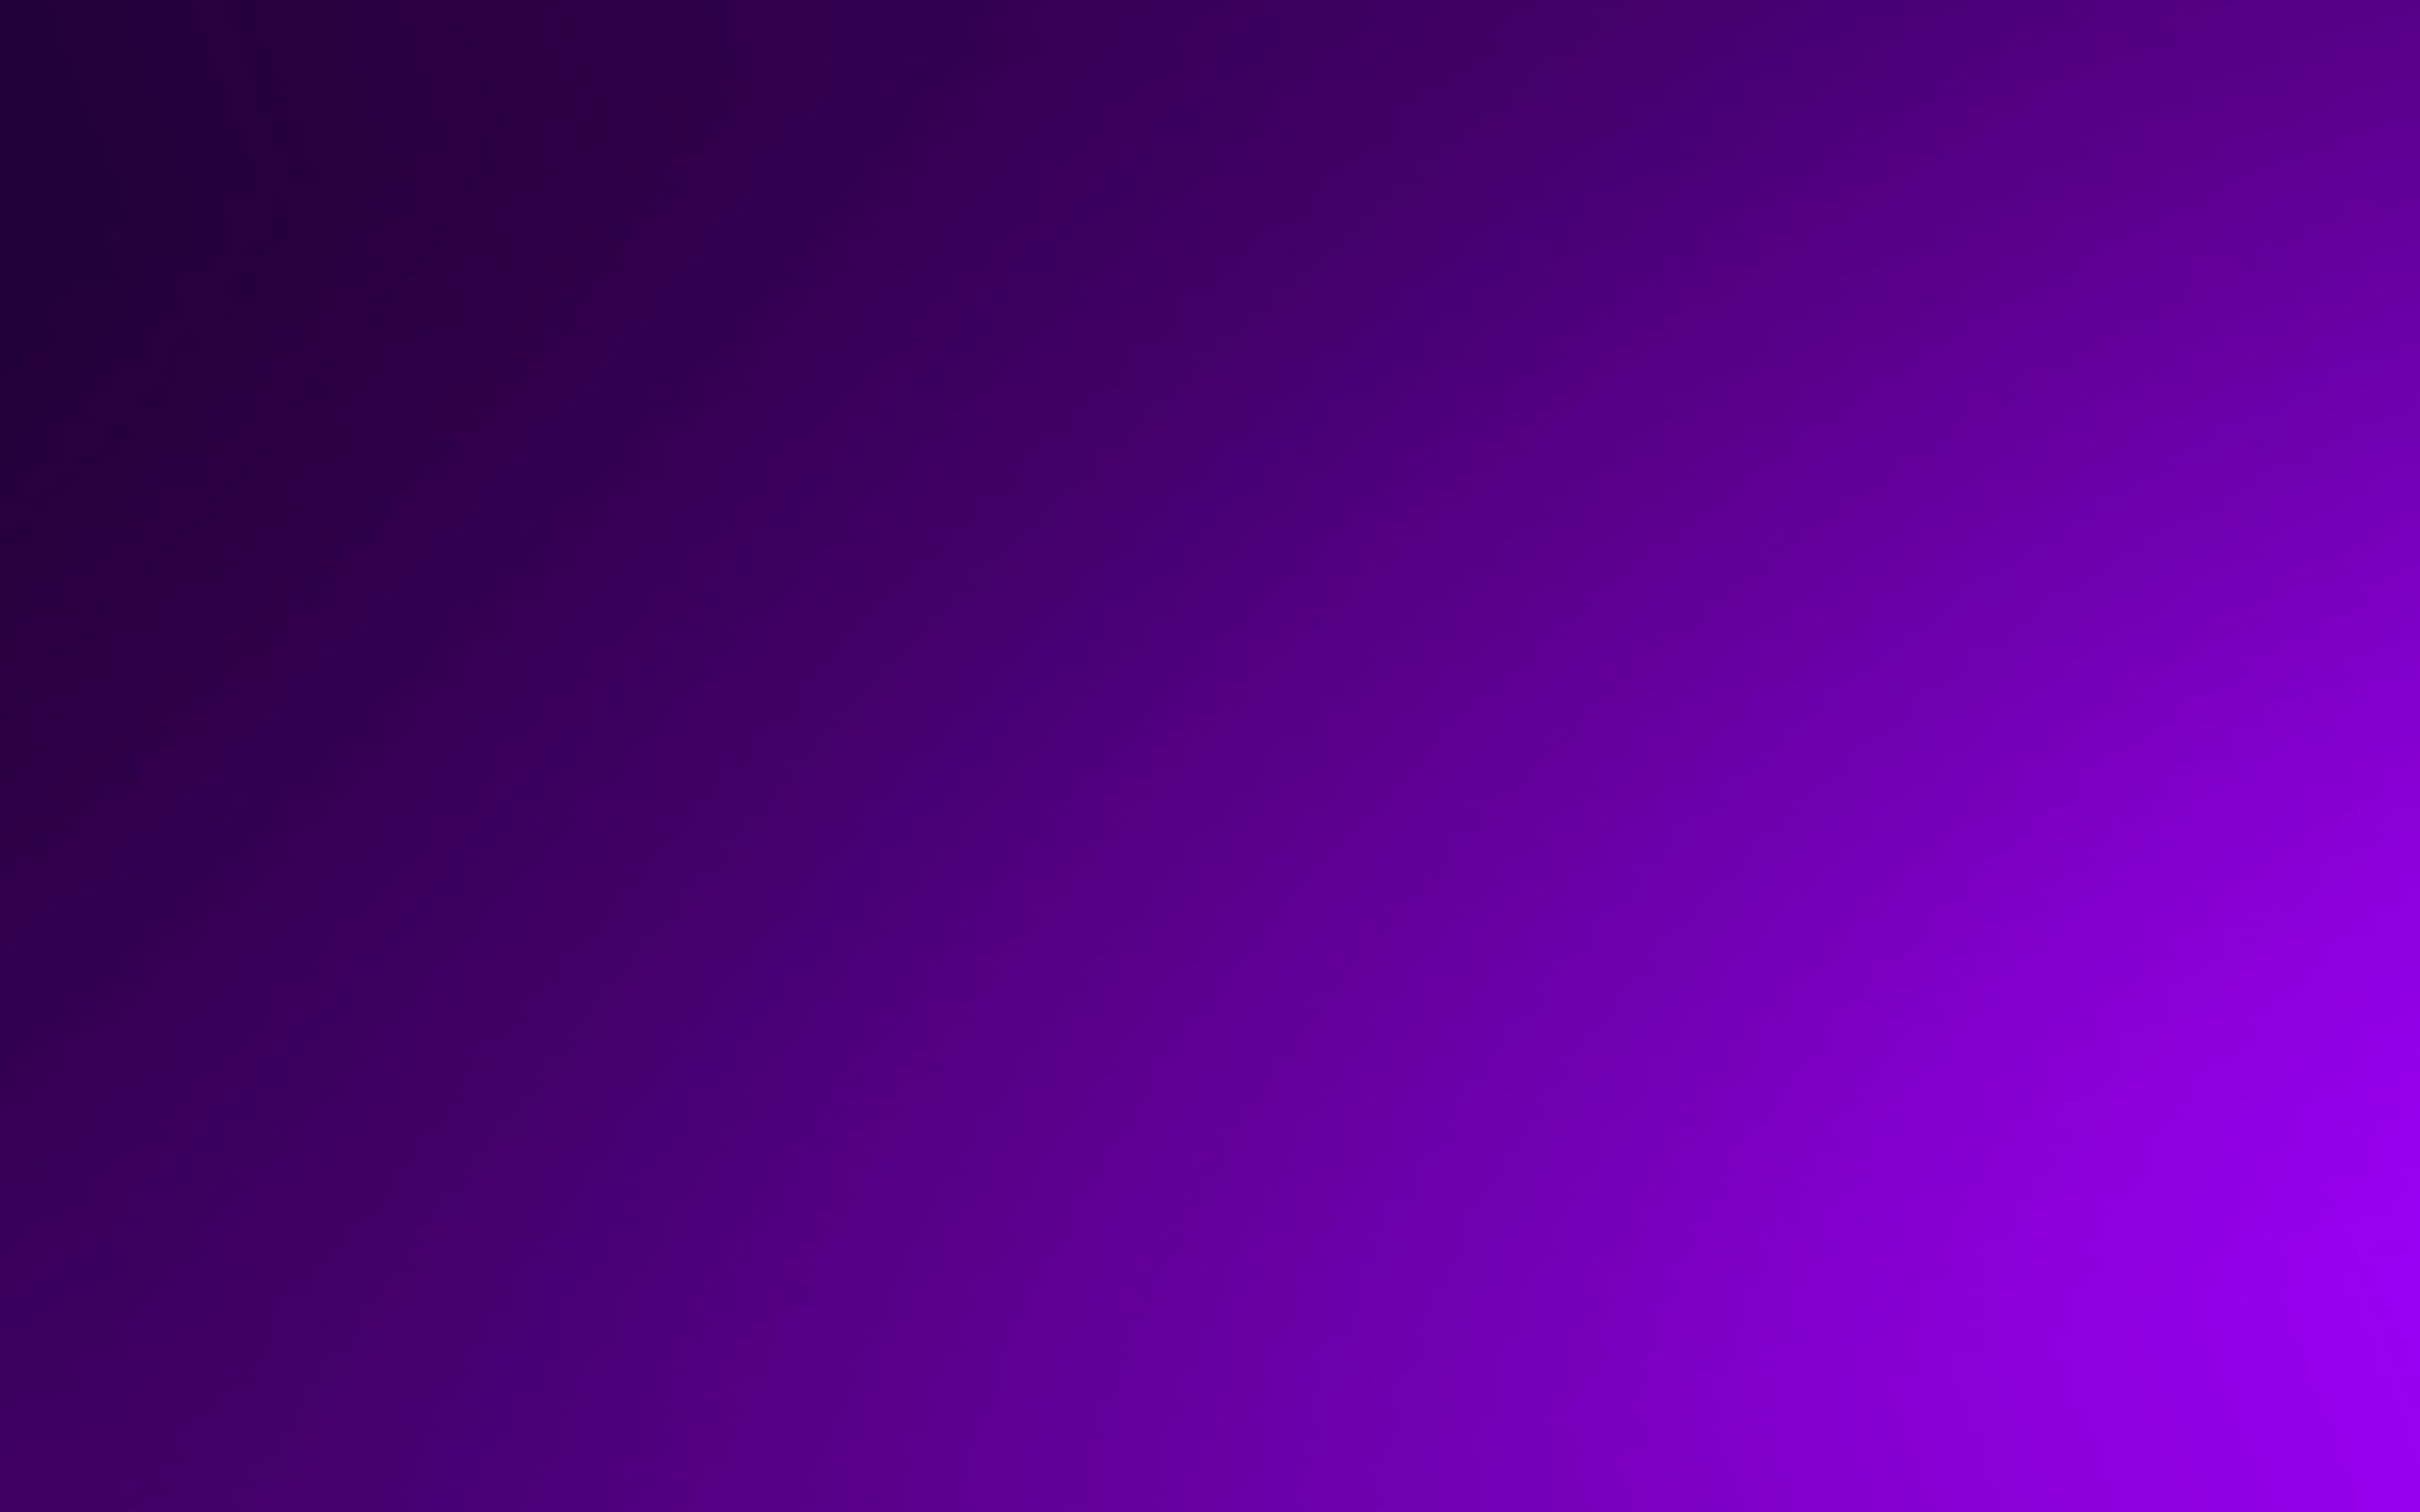 Hình nền tường màu tím đậm trên nền hình ảnh WallpaperDog (Solid purple wallpapers on WallpaperDog background) Với hơn 1 triệu lượt tải về, WallpaperDog là một trong những trang web ẩm thực đáng tin cậy nhất cho những người đang tìm kiếm hình nền đẹp. Và nếu bạn đang tìm kiếm hình nền với màu tím đầy mạnh mẽ, đừng bỏ lỡ khả năng lựa chọn hoàn hảo của chúng tôi trên WallpaperDog. Trải nghiệm sự thanh lịch và sáng tạo của các hình nền tím đậm trên nền hình ảnh chuyên nghiệp từ WallpaperDog ngay hôm nay!